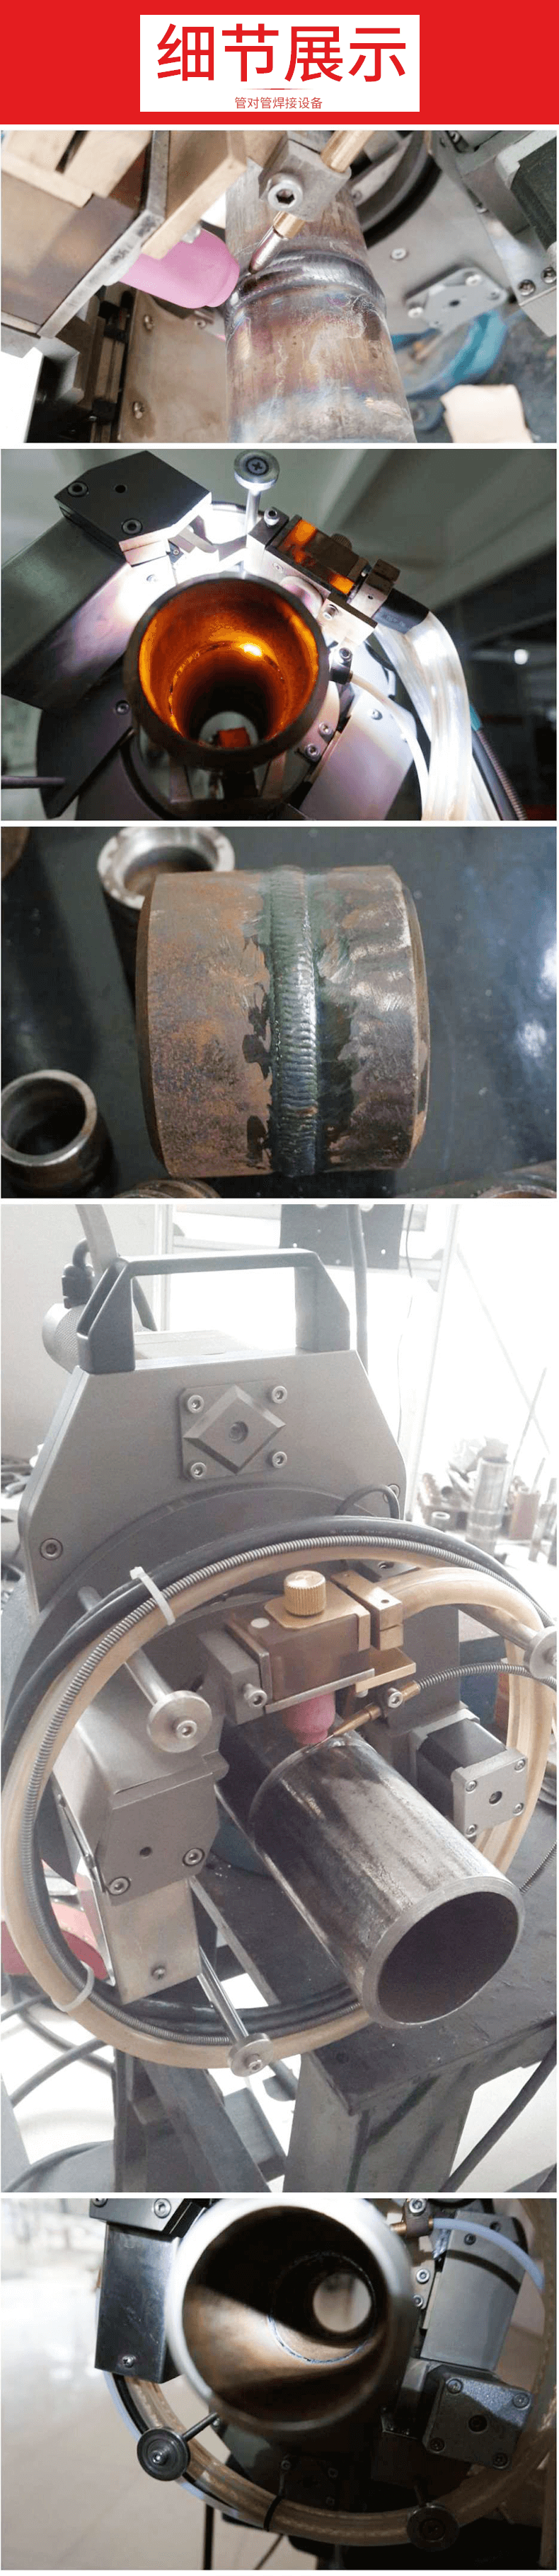 管对管焊接设备1-细节展示.png